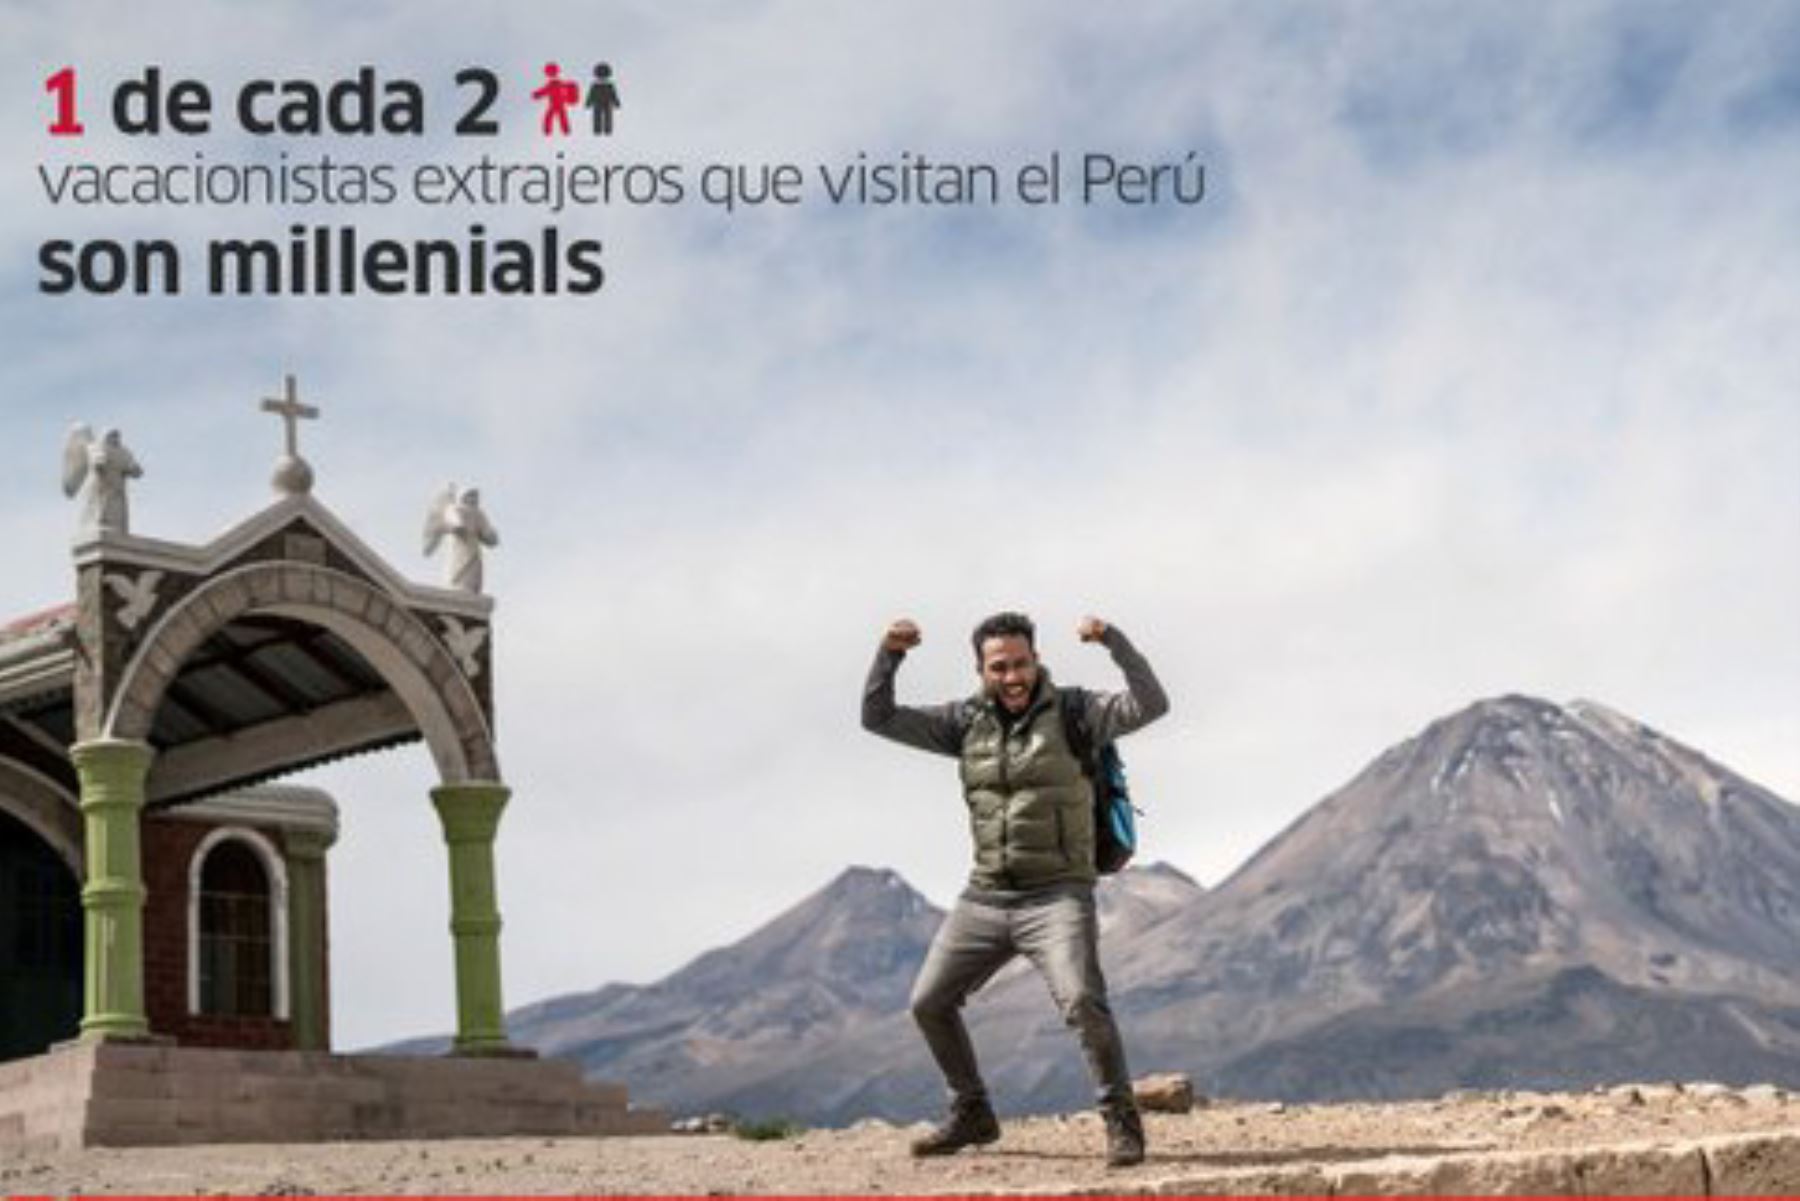 Uno de cada dos vacacionistas extranjeros que visitan el Perú son millenials, revela Promperú